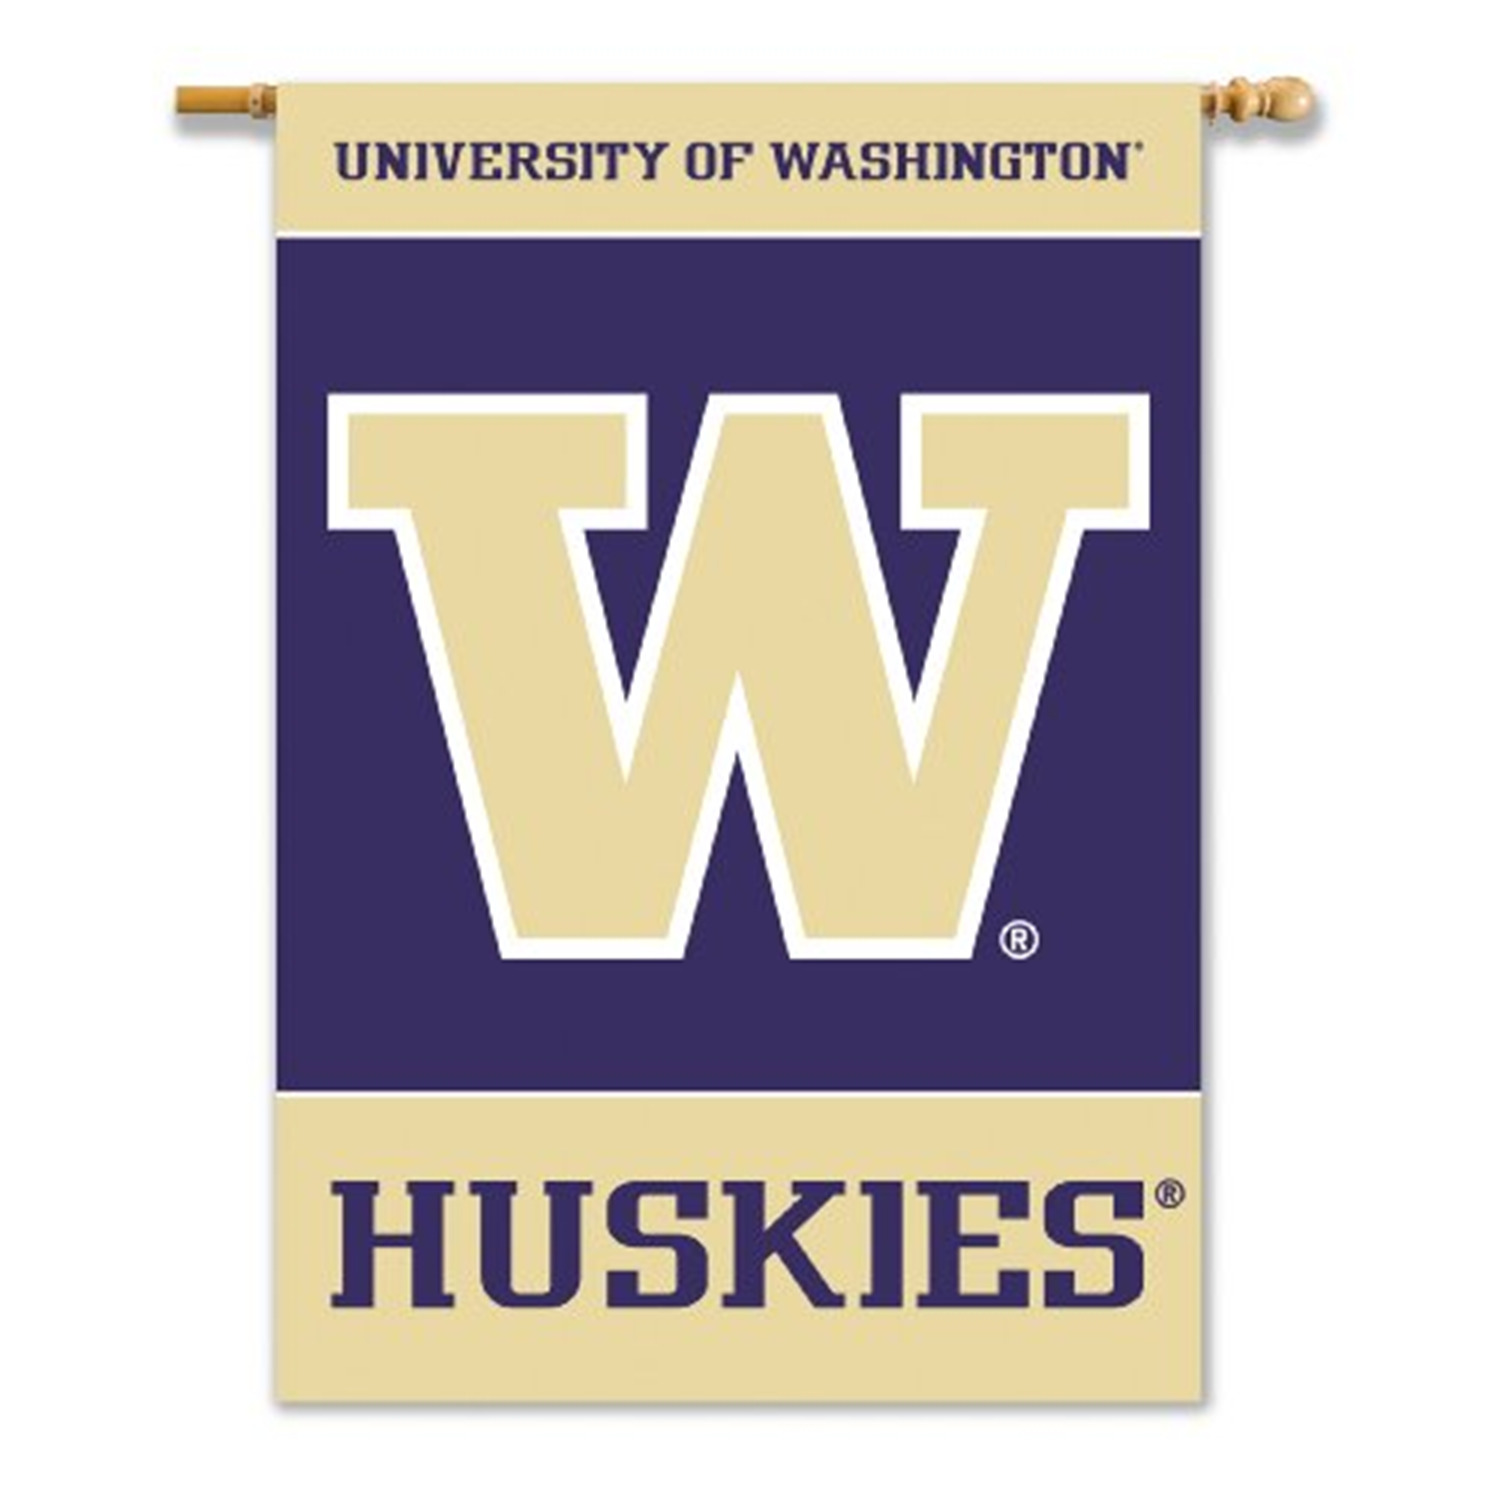 University of Washington Huskies Premium 2-Sided 28x40 Inch Banner Flag with Pole Sleeve - image 1 of 7